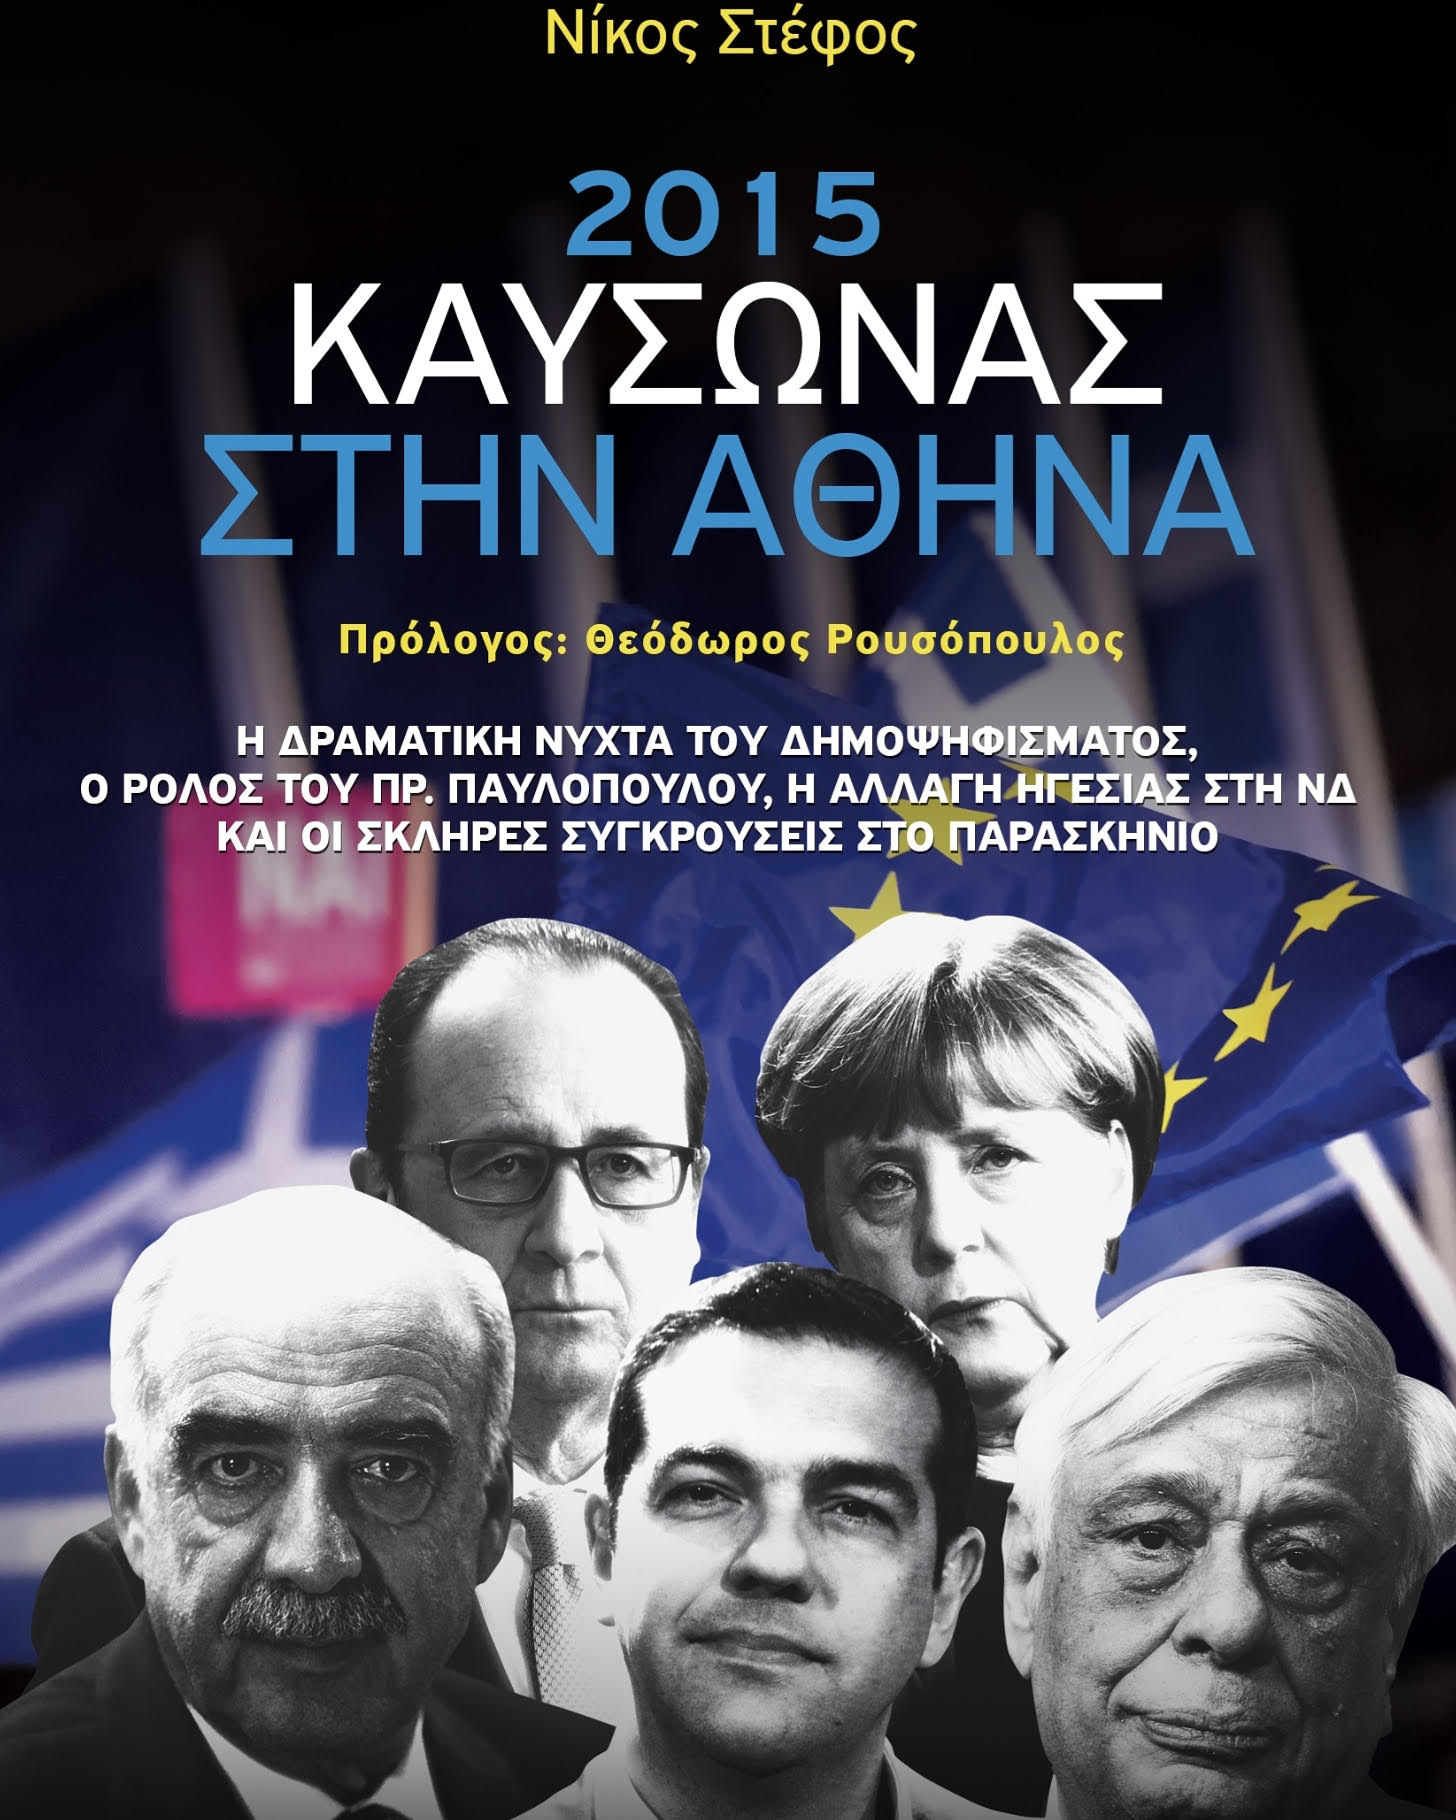 «2015, καύσωνας στην Αθήνα»: Ένα συναρπαστικό πολιτικό θρίλερ